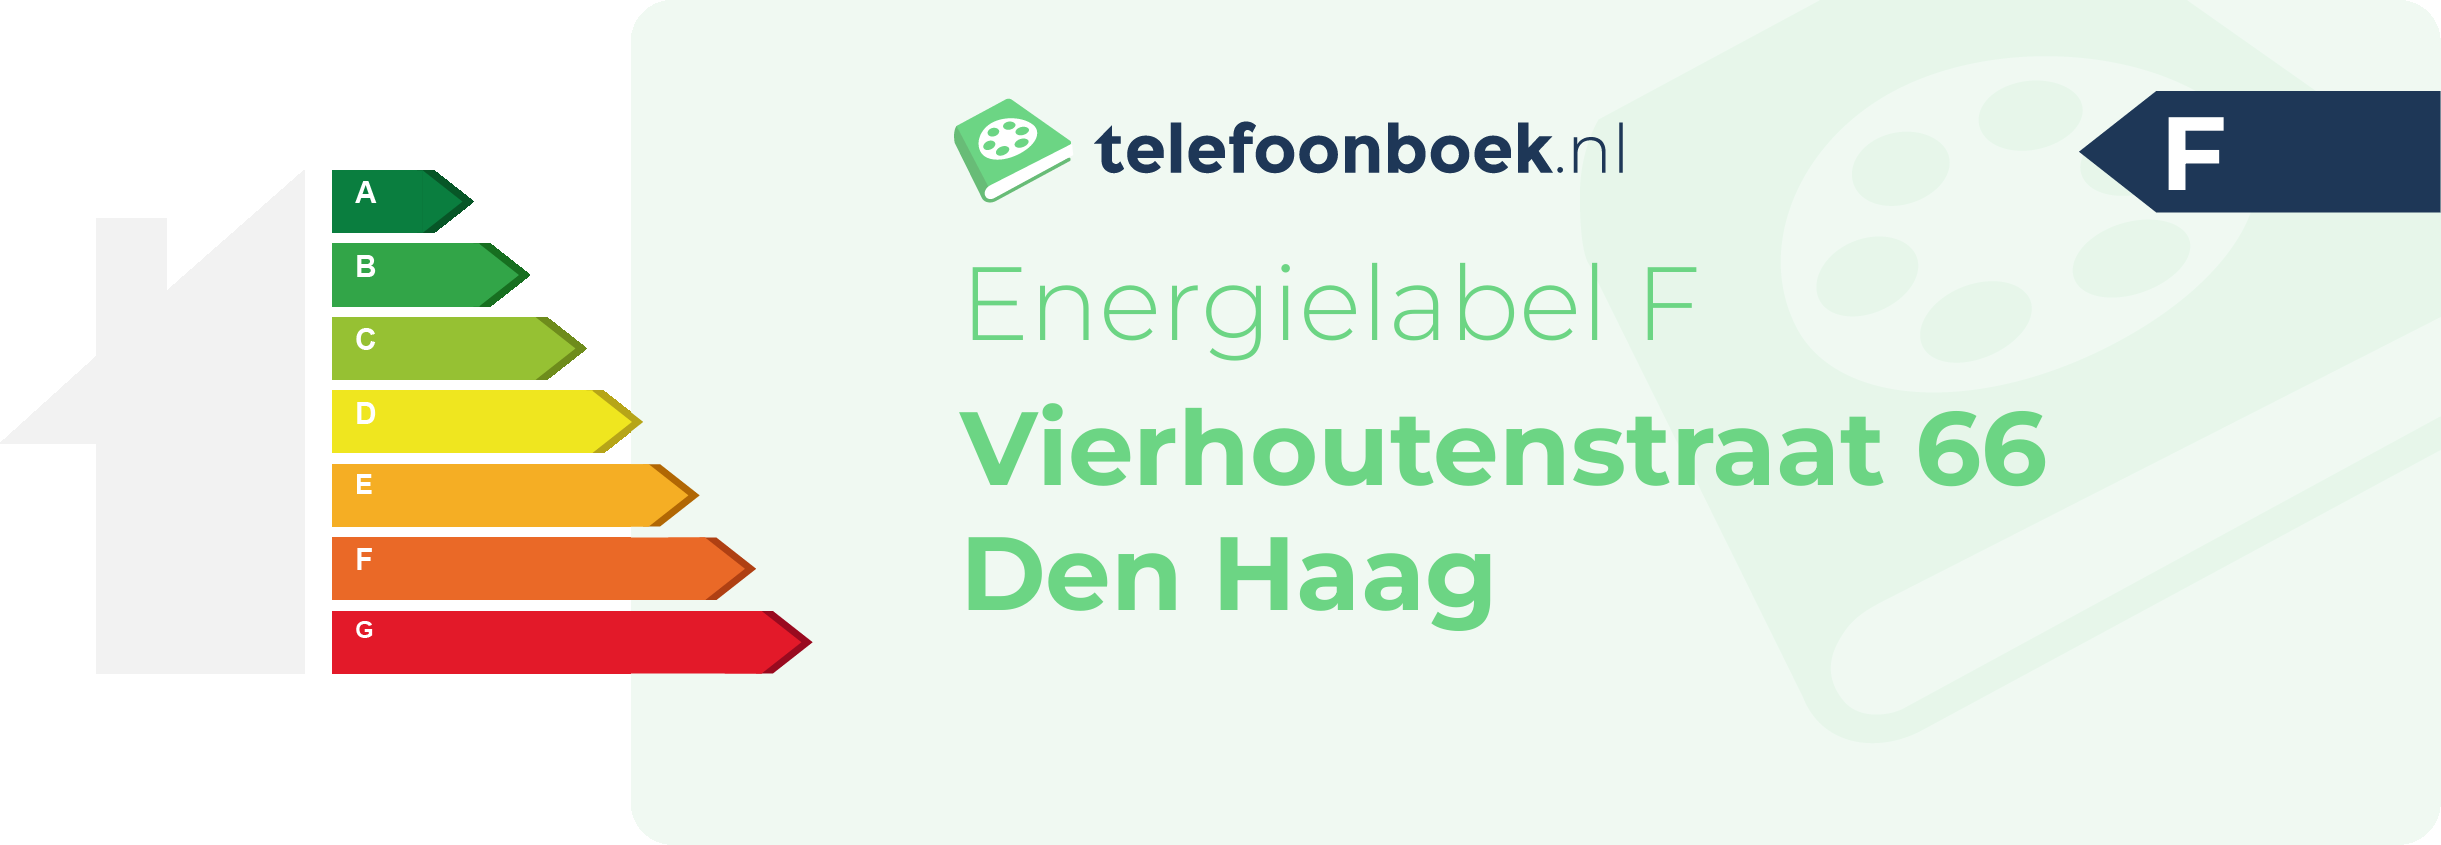 Energielabel Vierhoutenstraat 66 Den Haag